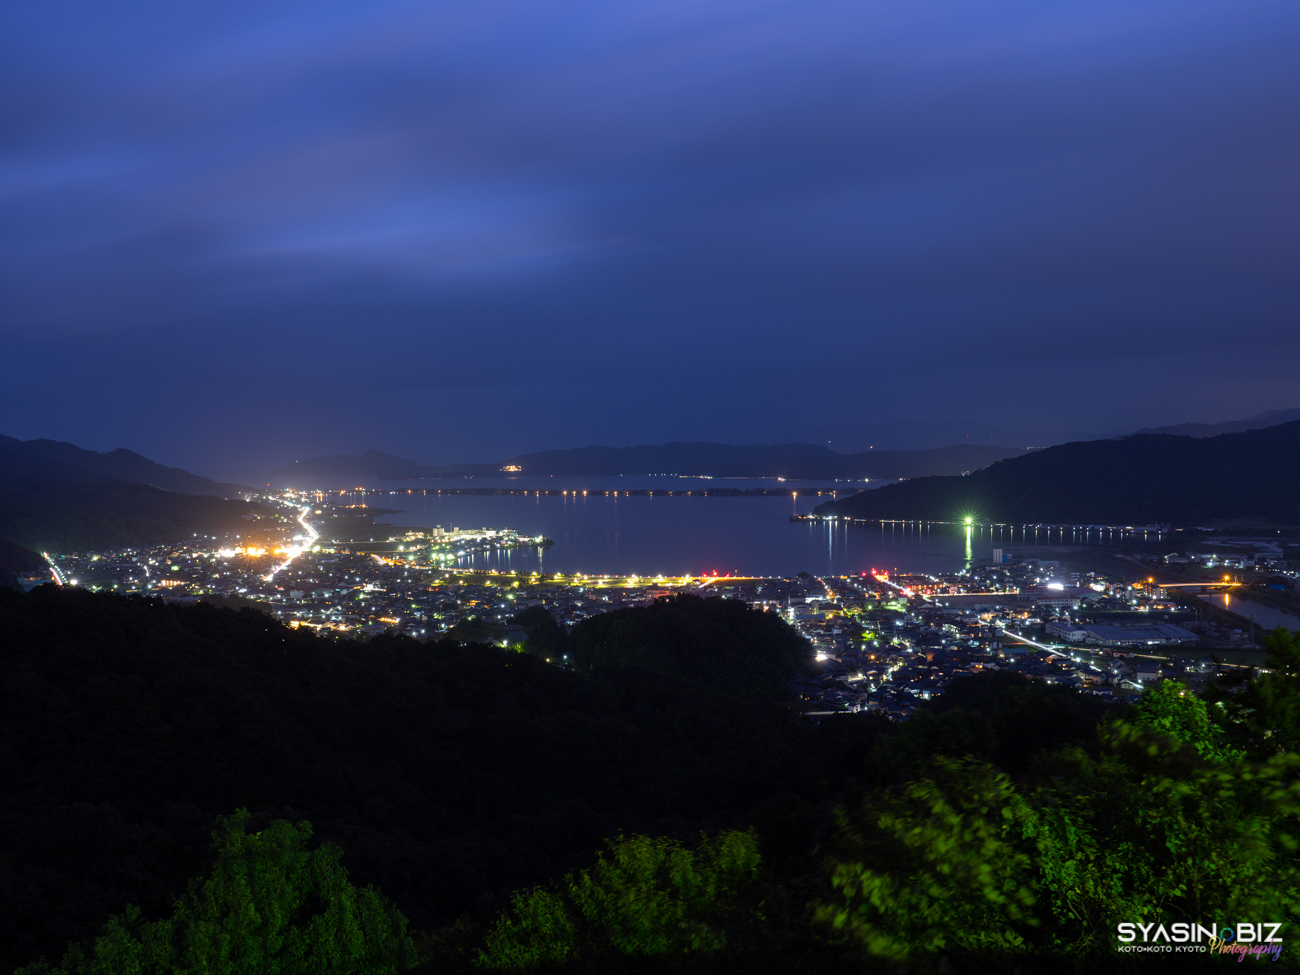 大内峠一字観公園 – 日本三景・天橋立を眺める与謝野町の夜景